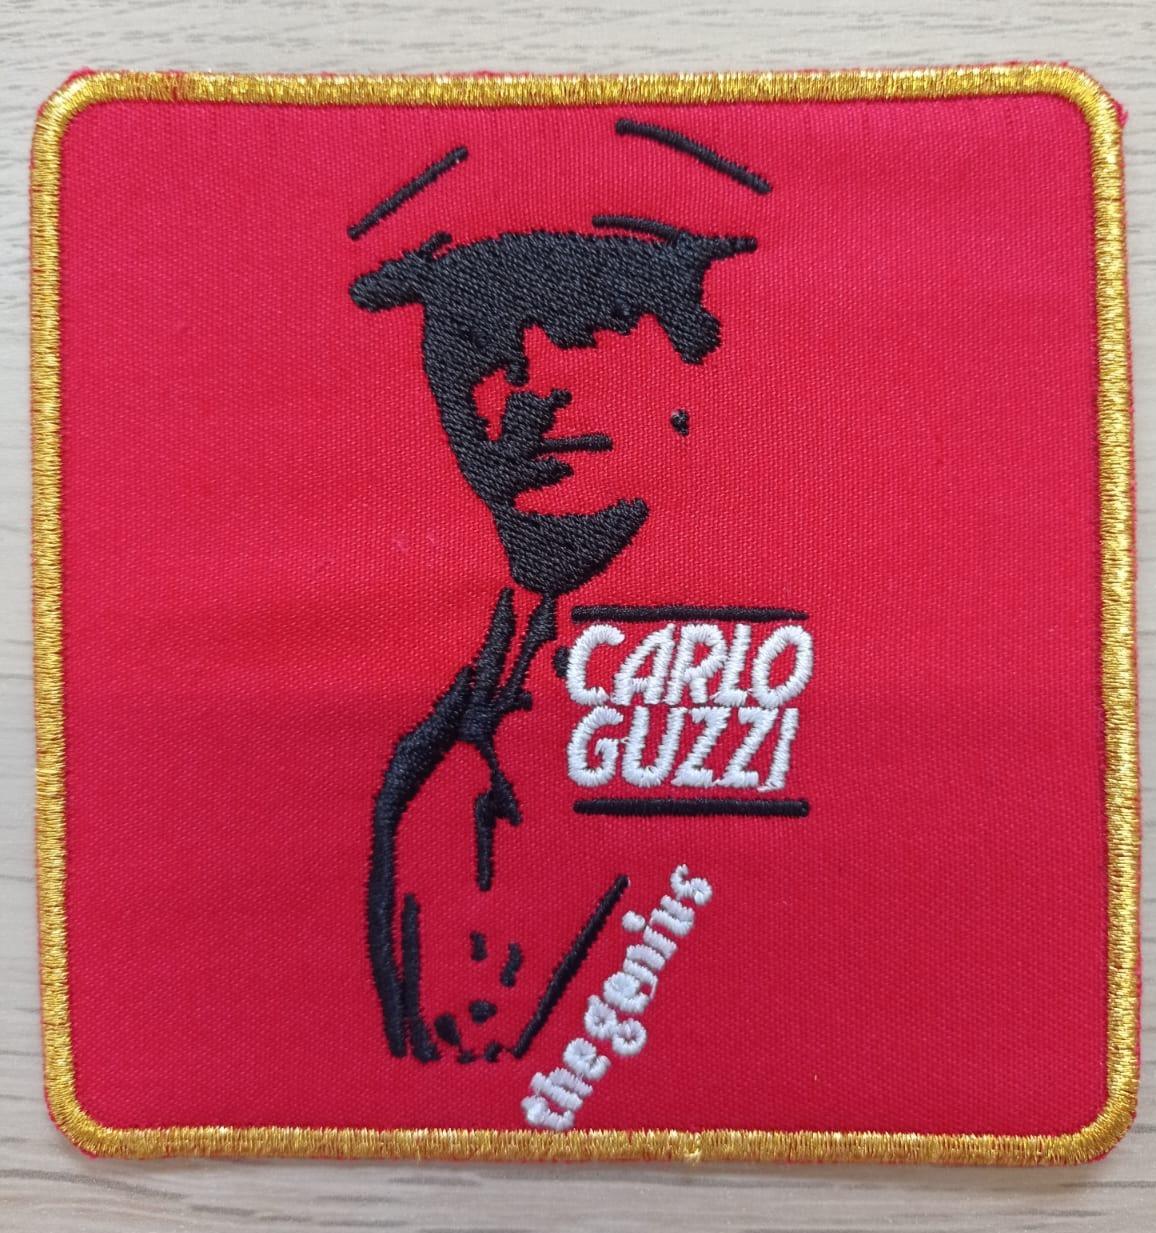 Patch Carlo Guzzi